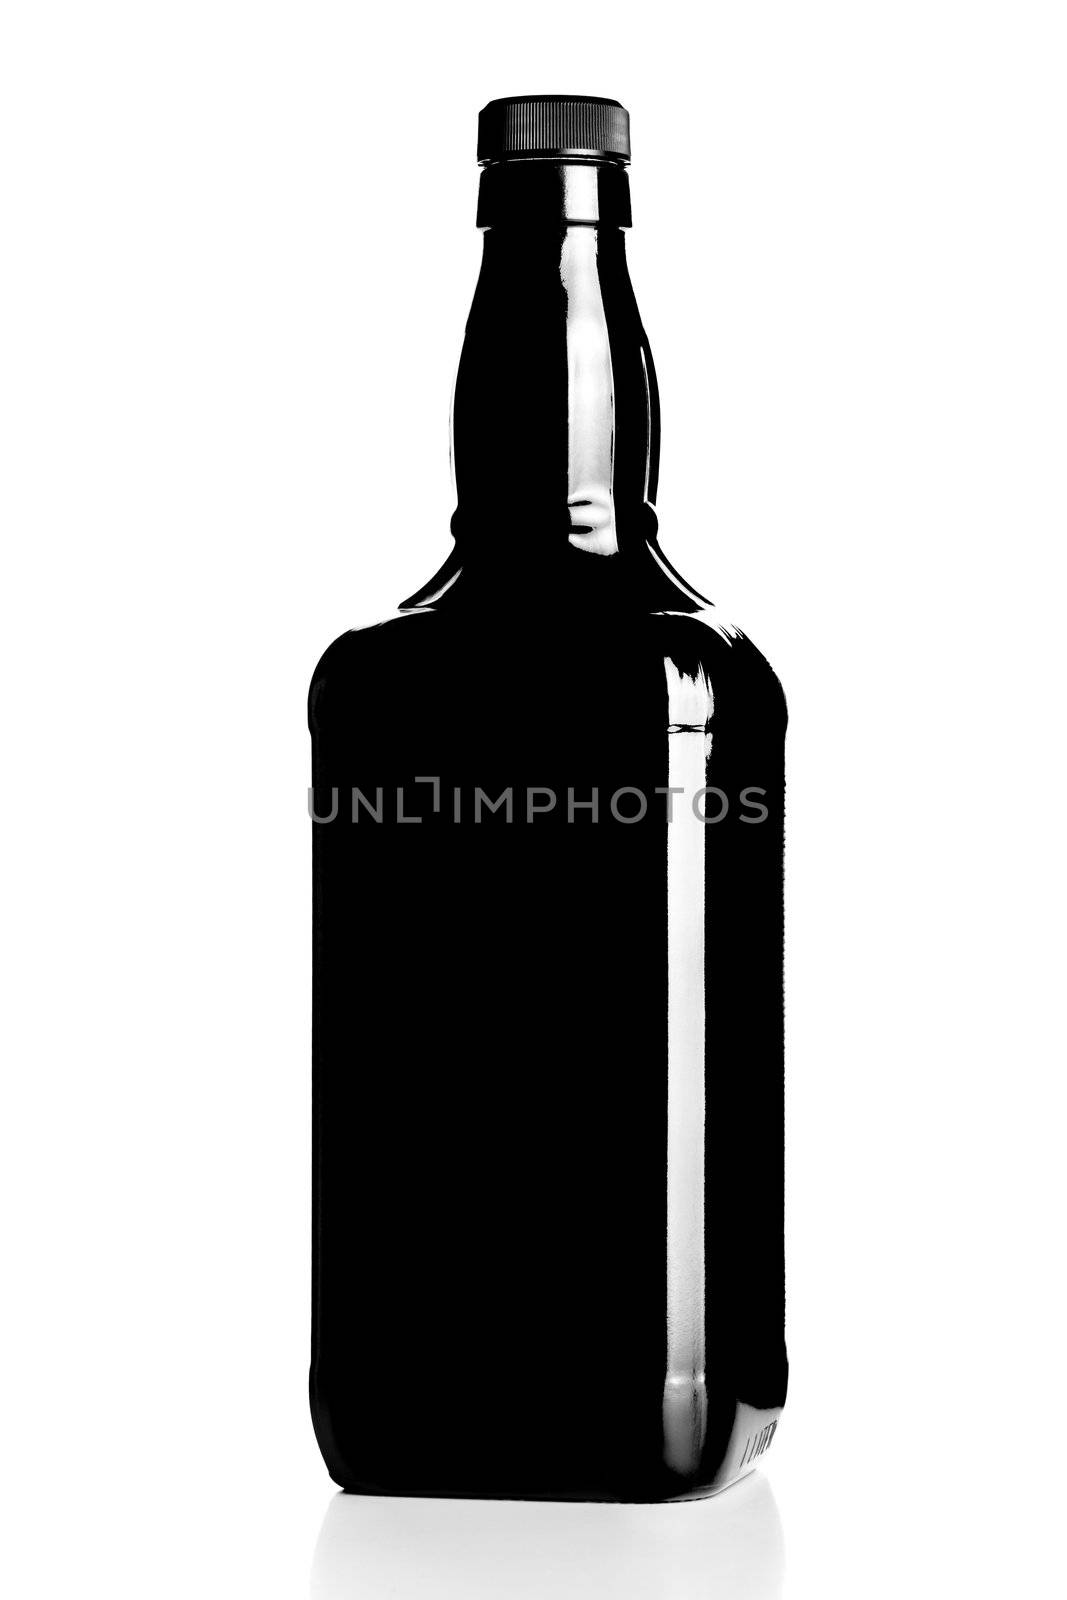 alcohol bottle by kokimk